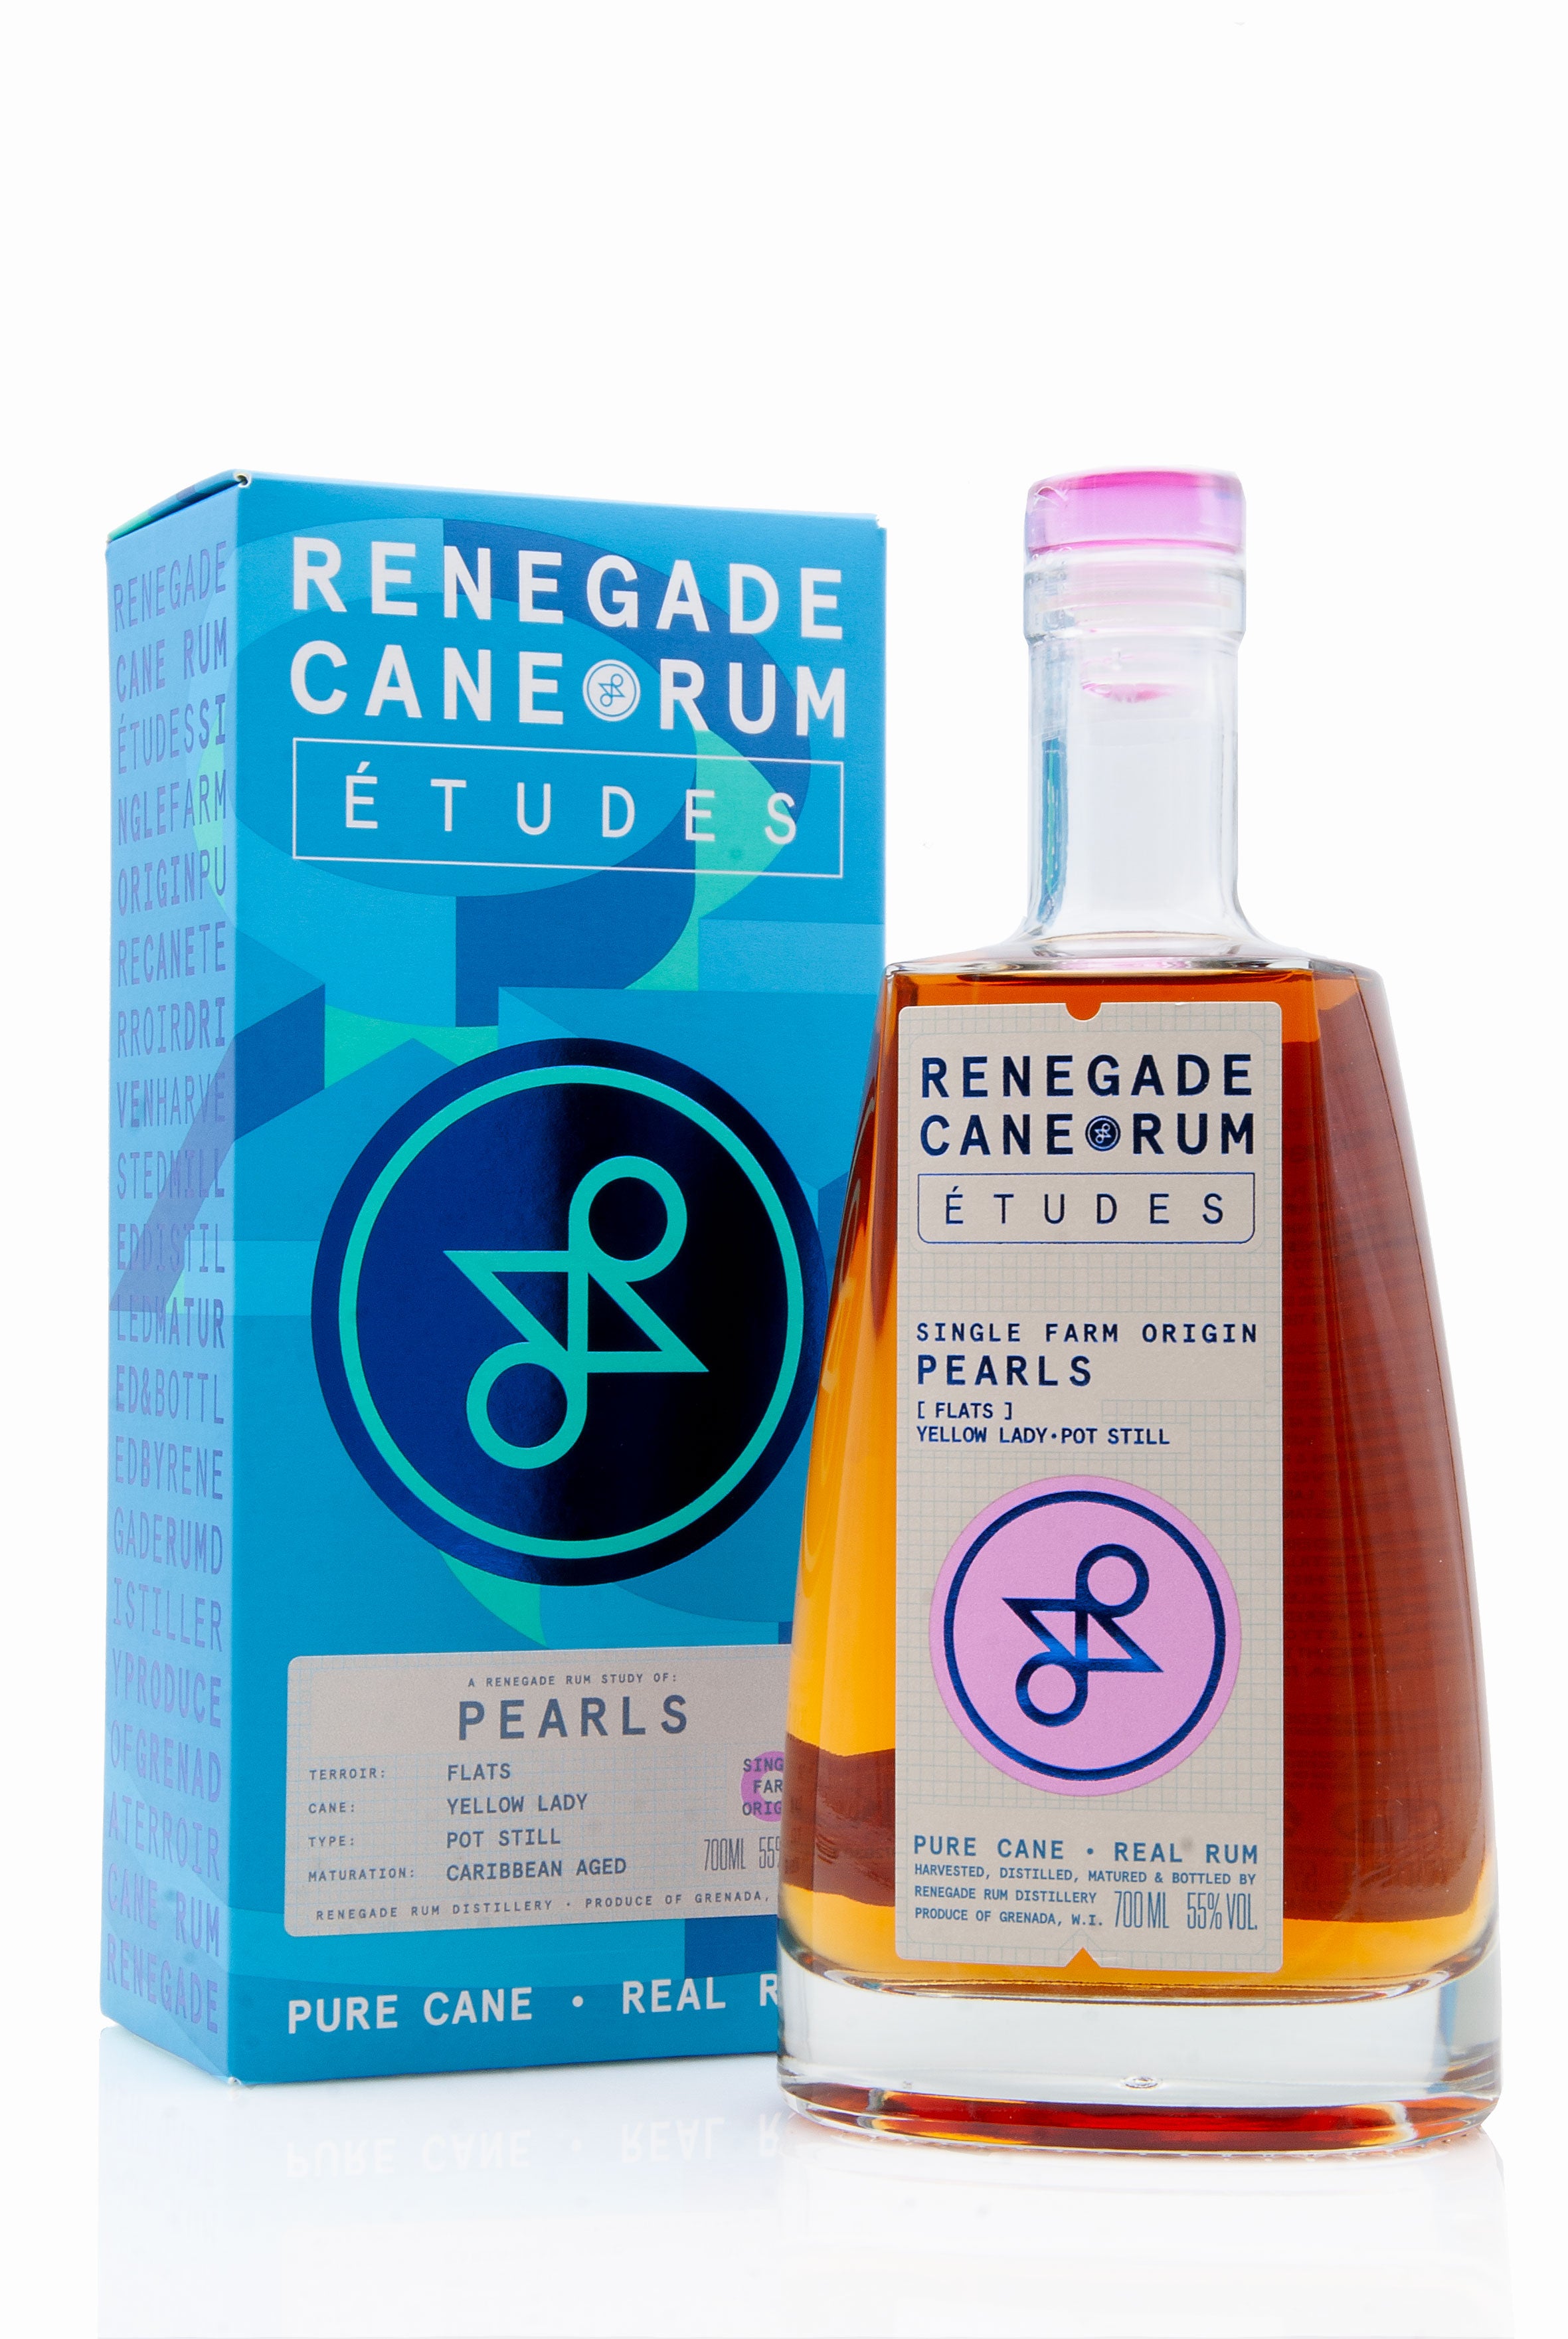 Renegade Cane Rum Études Pearls